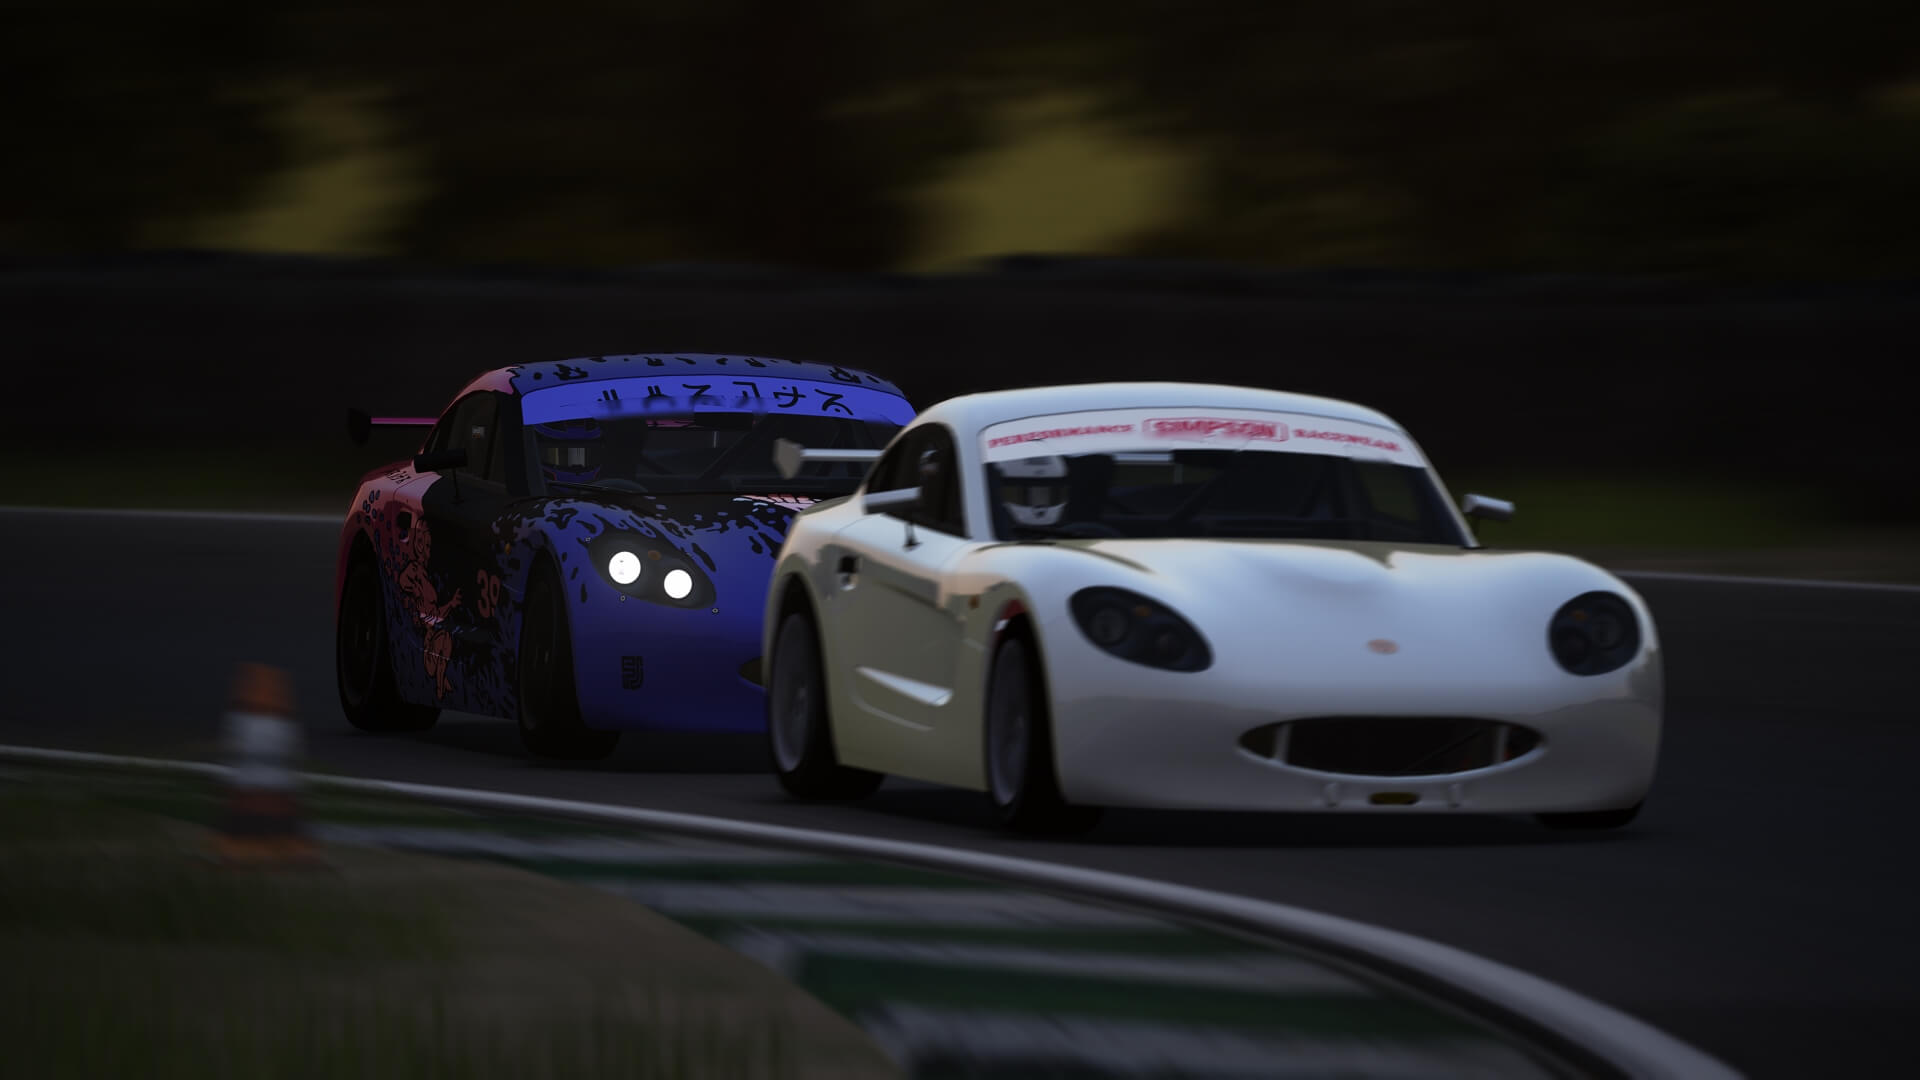 The Ginnetta racing around Croft Circuit